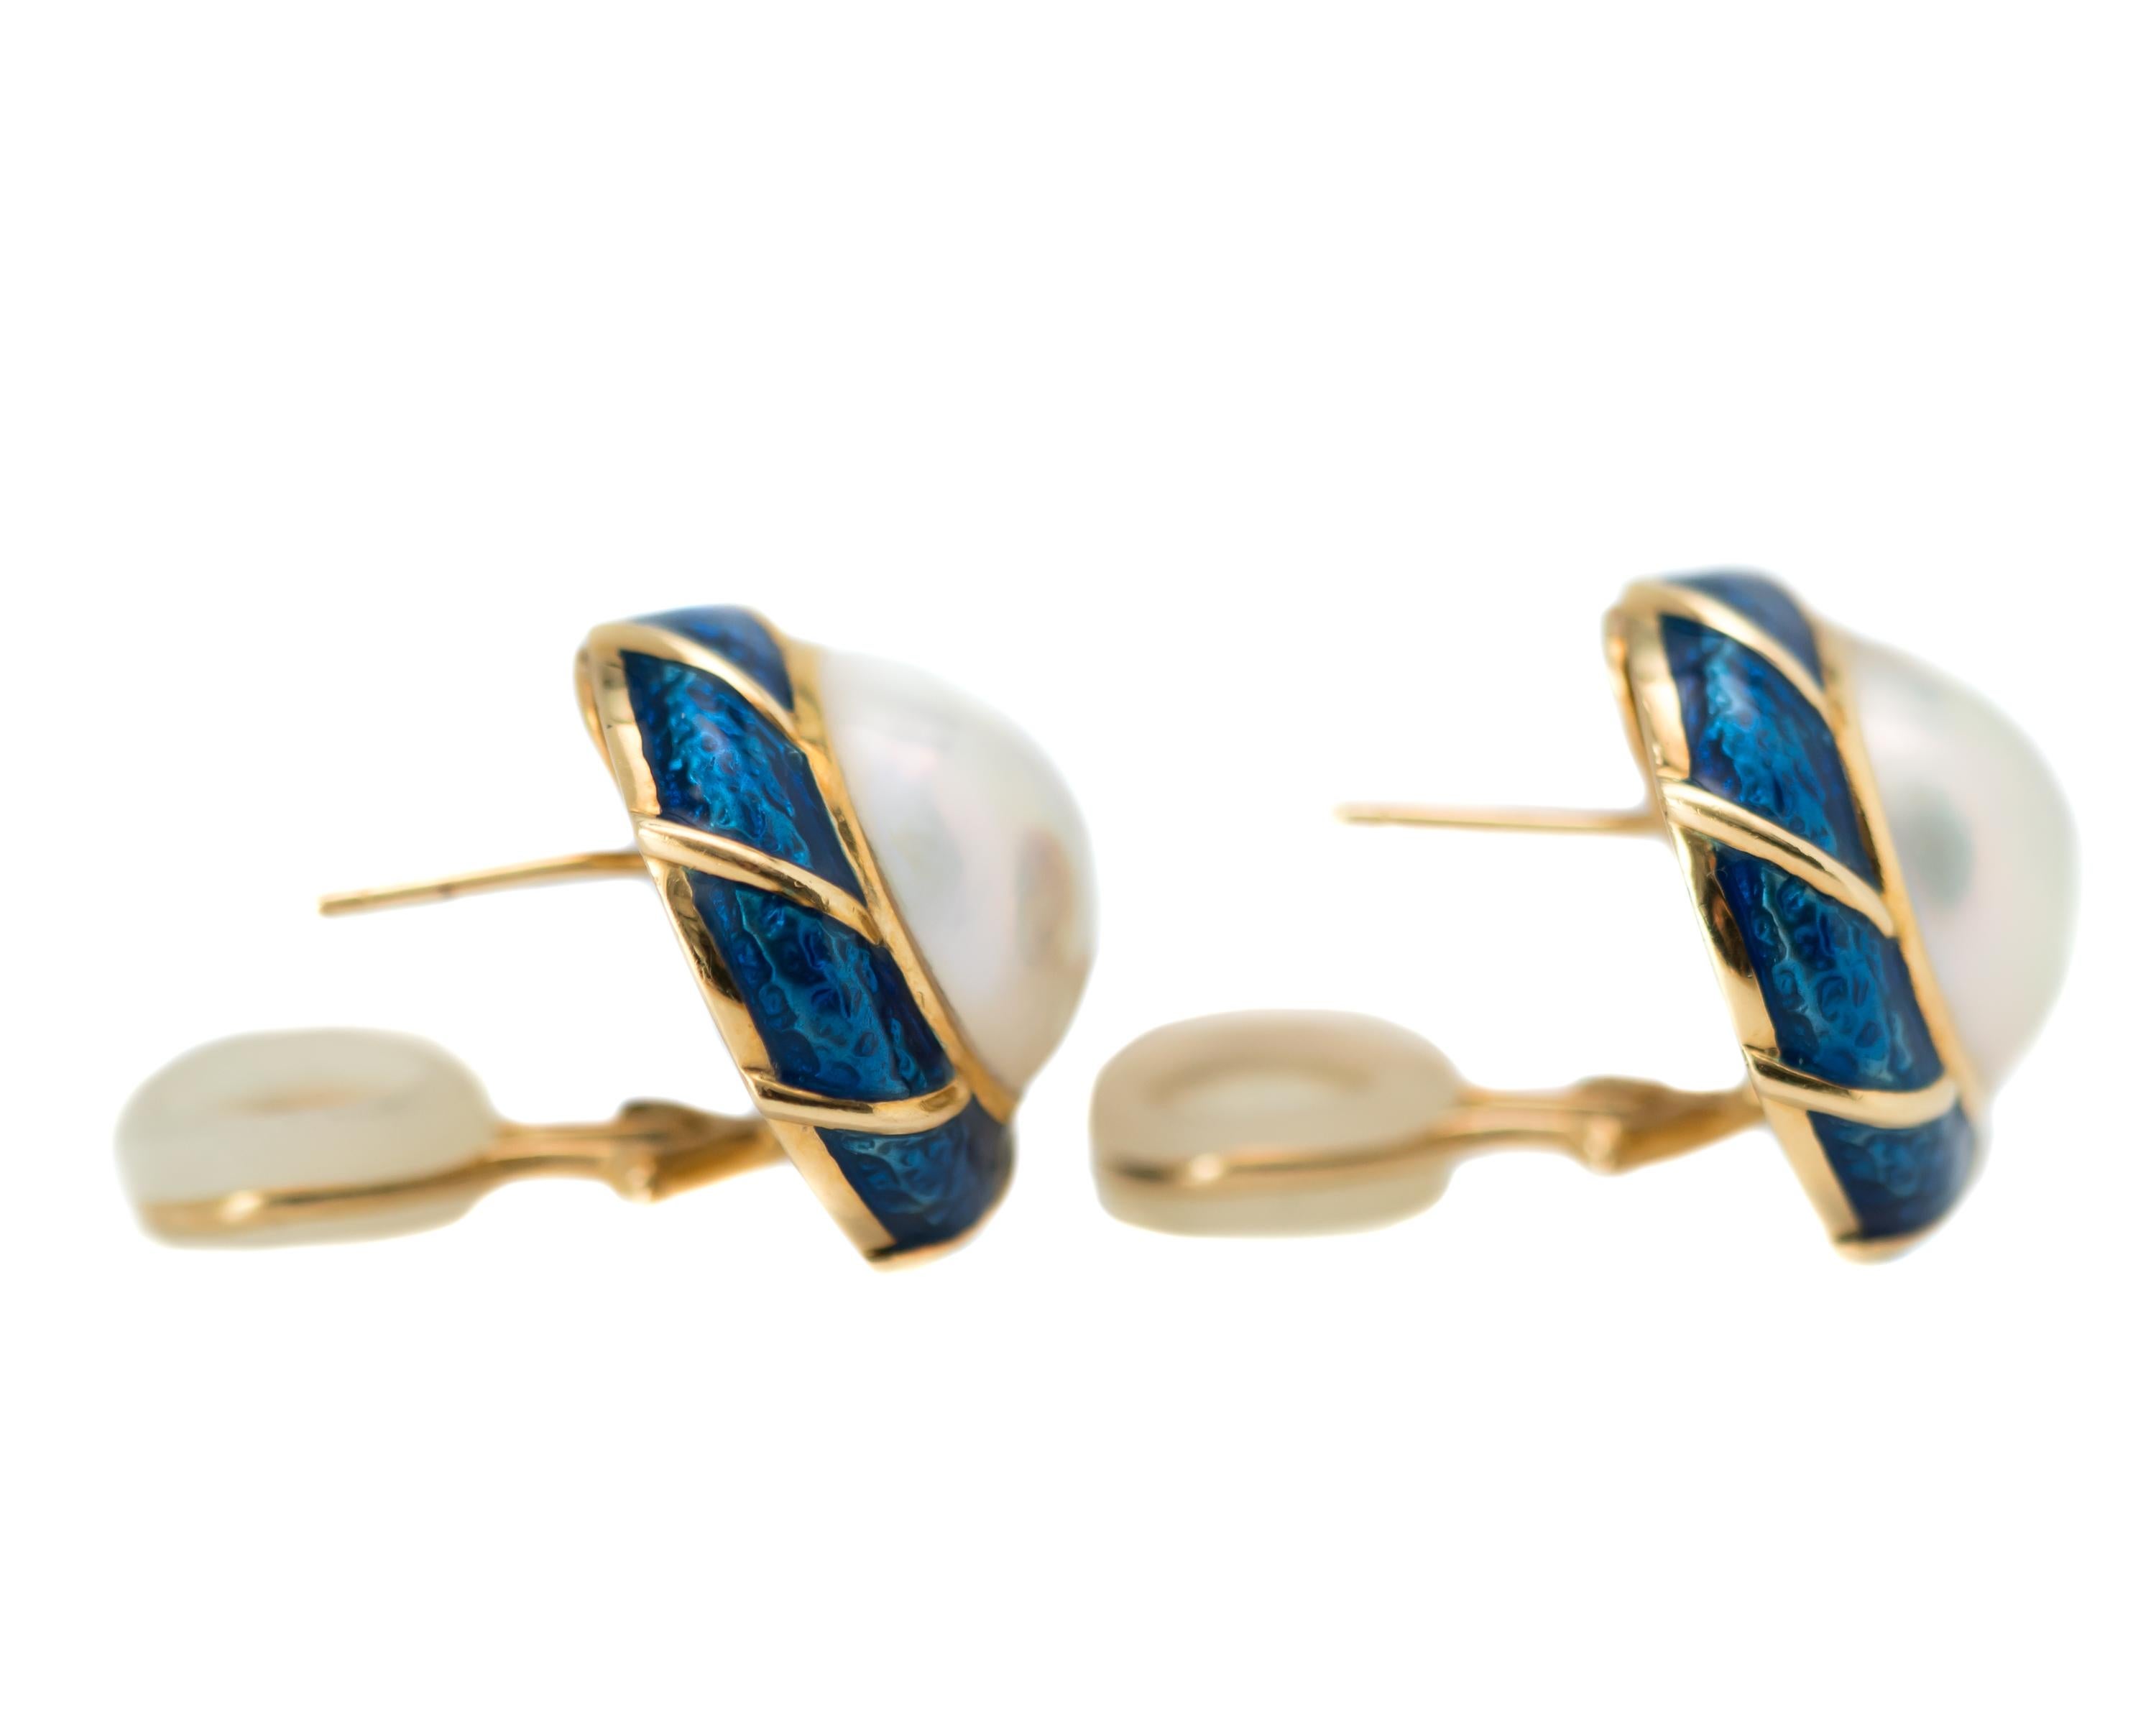 Tiffany & Co. Pearl and Enamel 18 Karat Yellow Gold Earrings 1